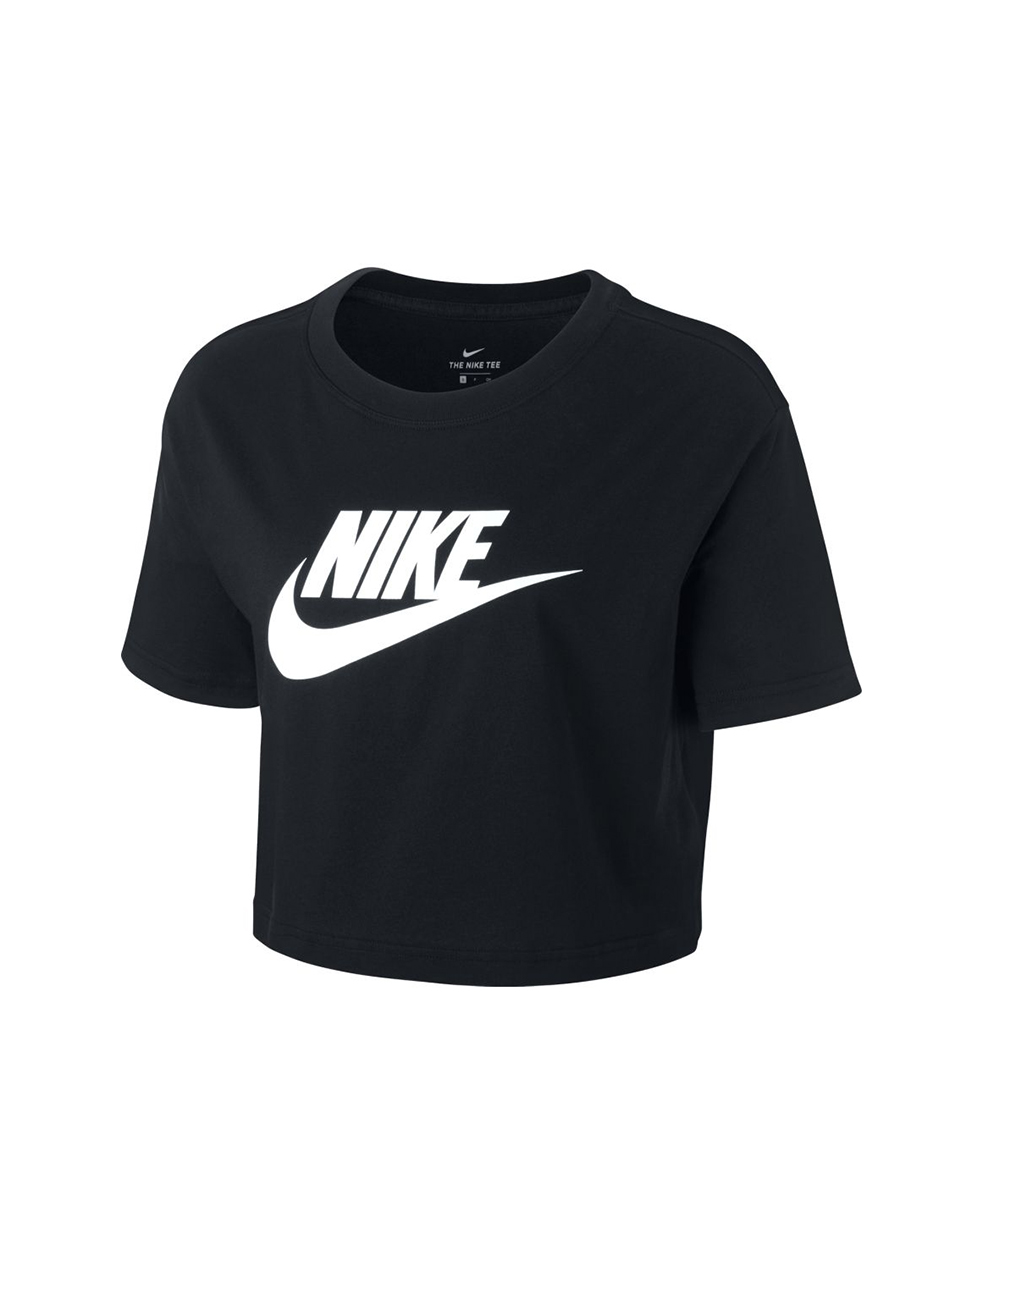 NIKE – Sportswear essential women cropped t-shirt